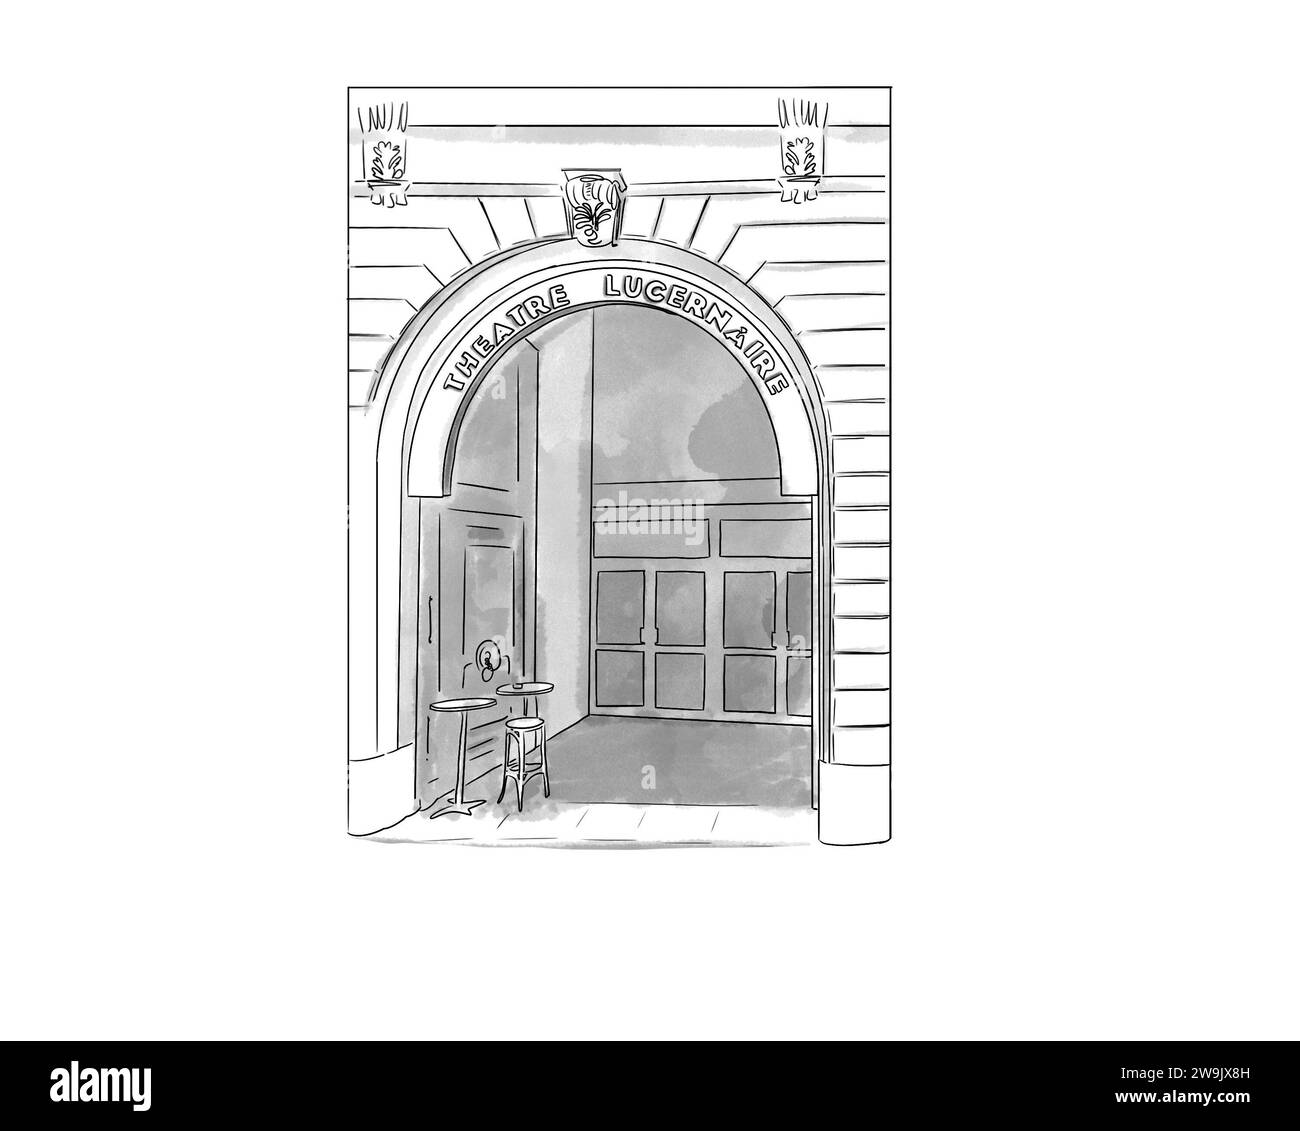 Illustration en noir et blanc de monument de Paris, théâtre le Lucernaire Stock Photo